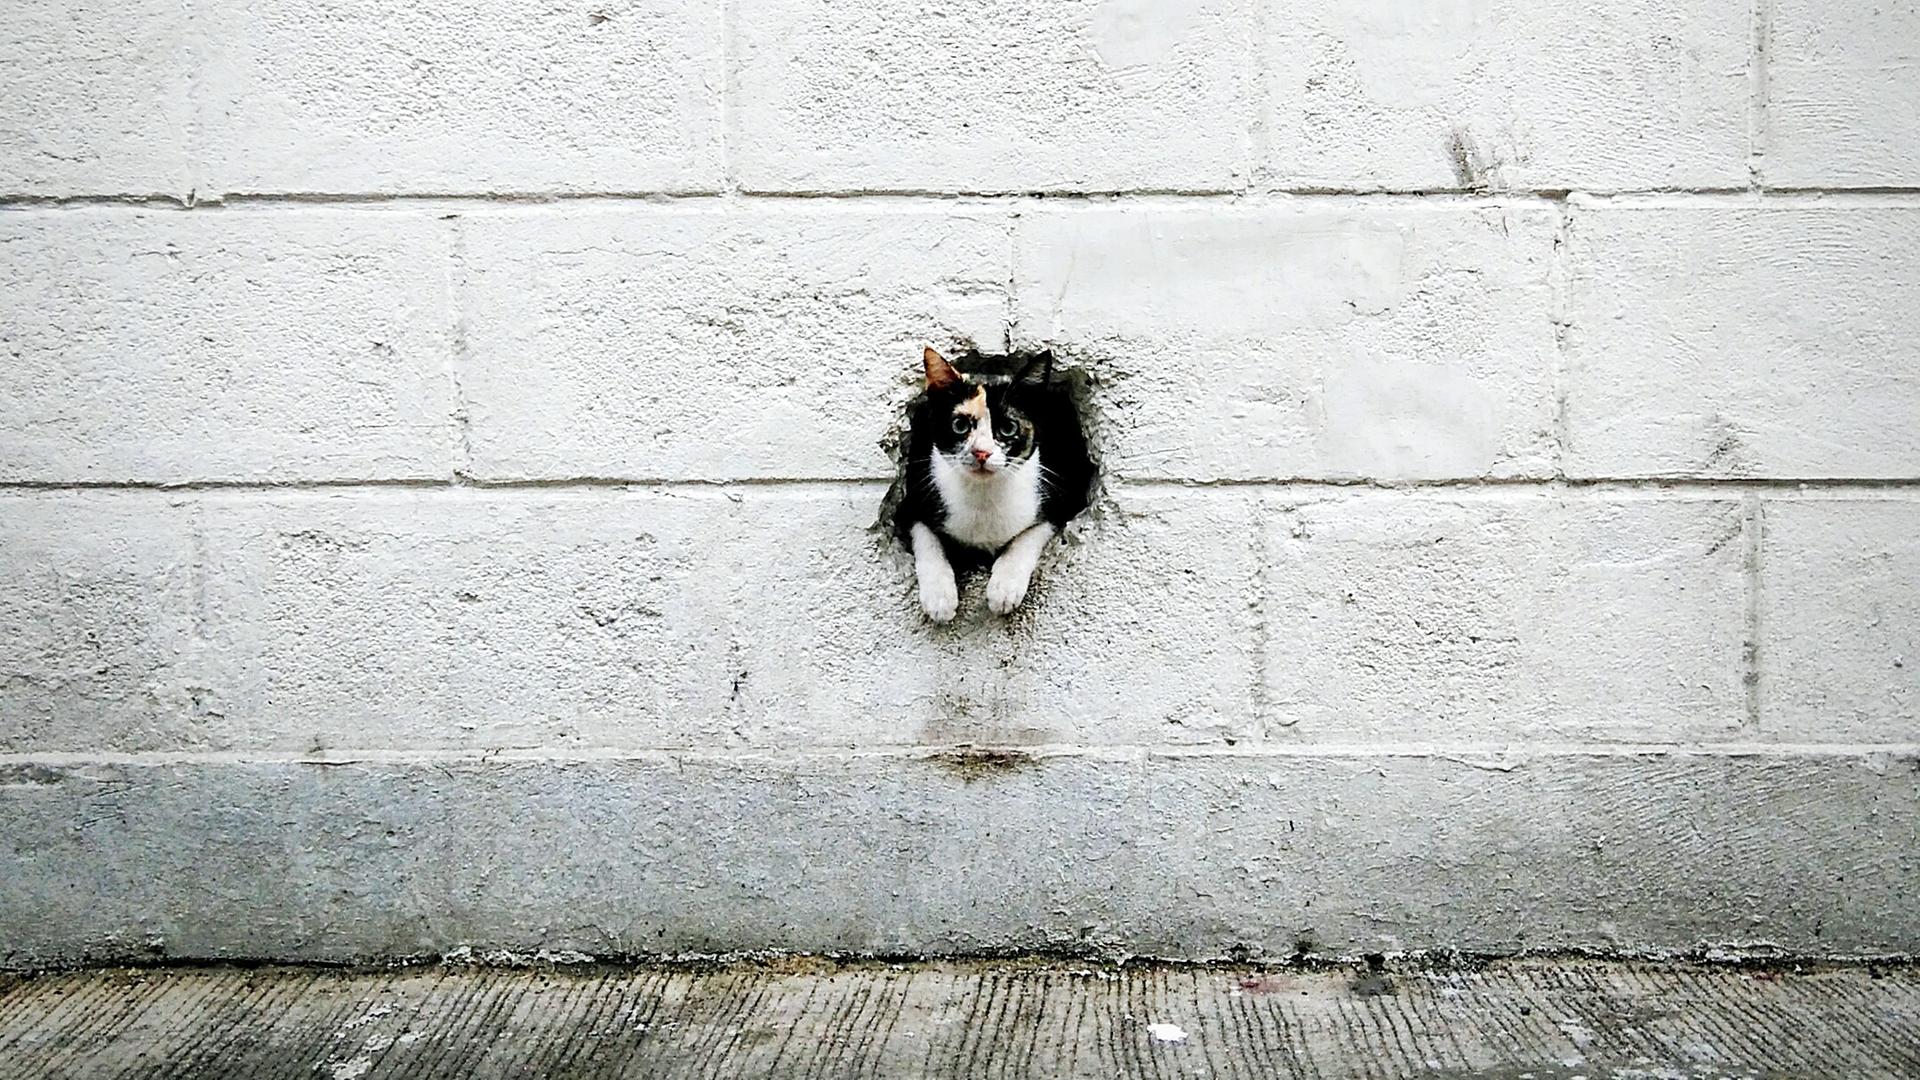 Eine Katze schaut aus einem Loch in einer Wand hinaus.